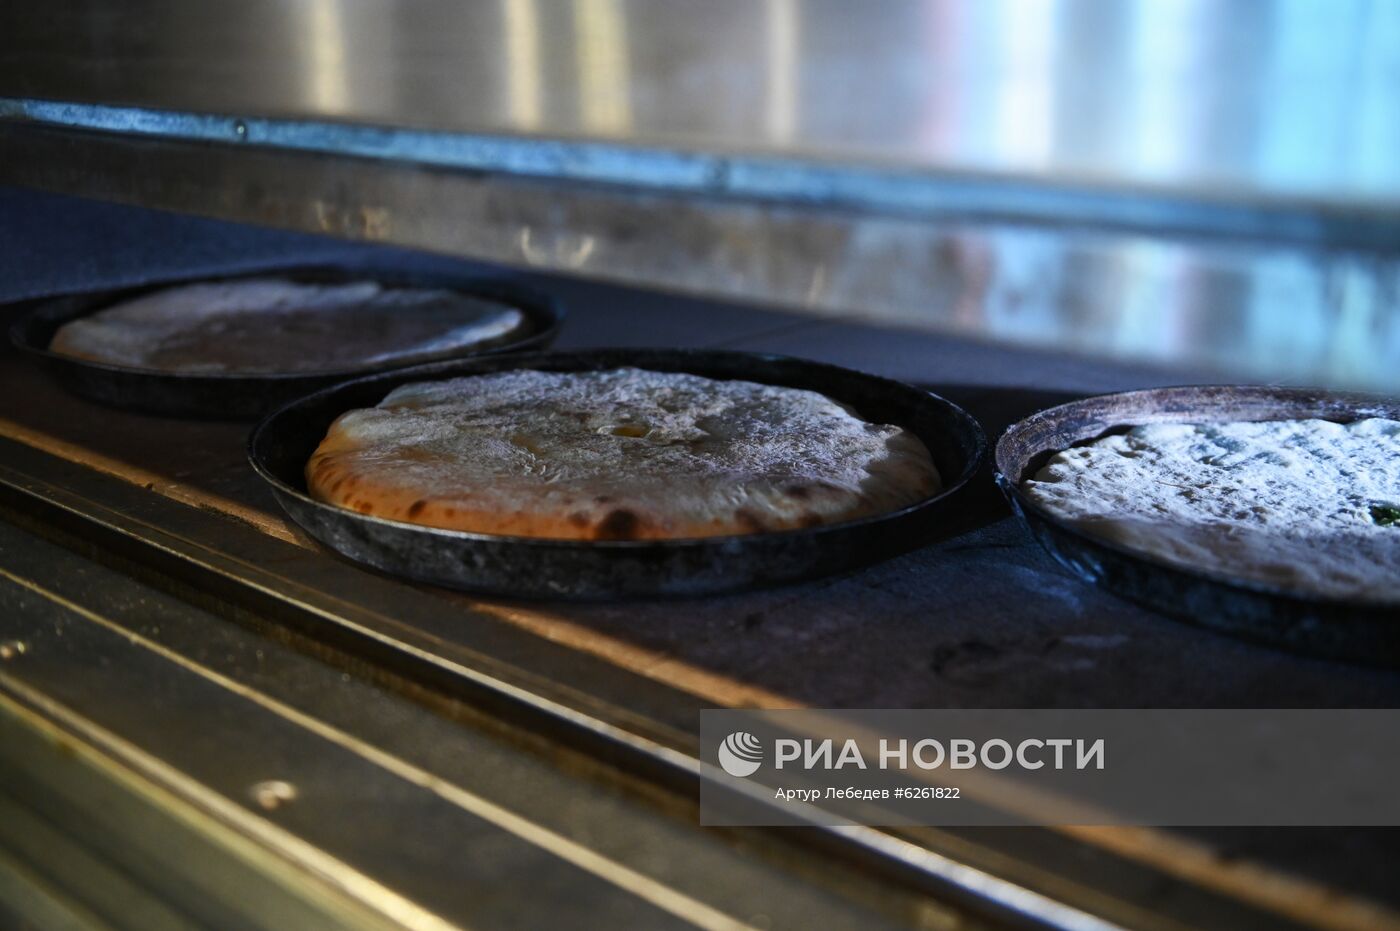 Акция "Испеки пироги и скажи: "Спасибо!" в рамках празднования Дня России в Сочи